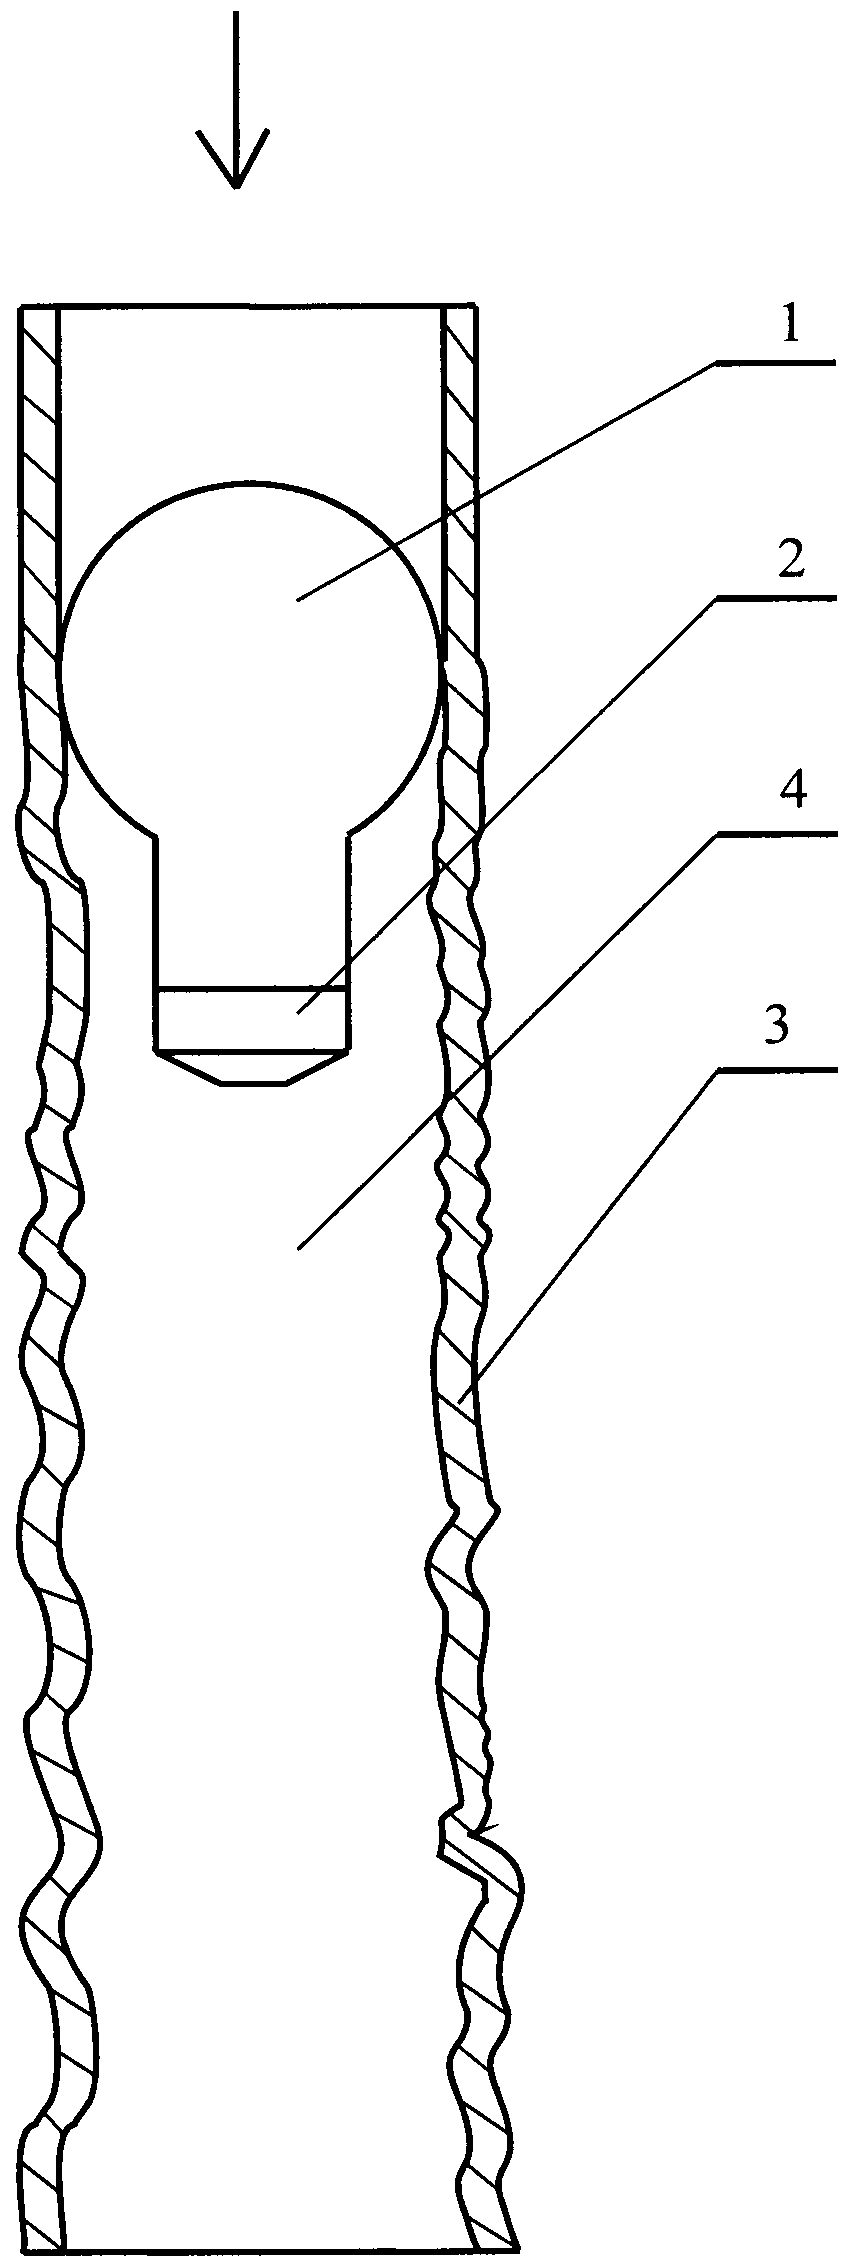 Способ для рихтовки криволинейной стенки трубы из алюминиевой фольги для упаковки